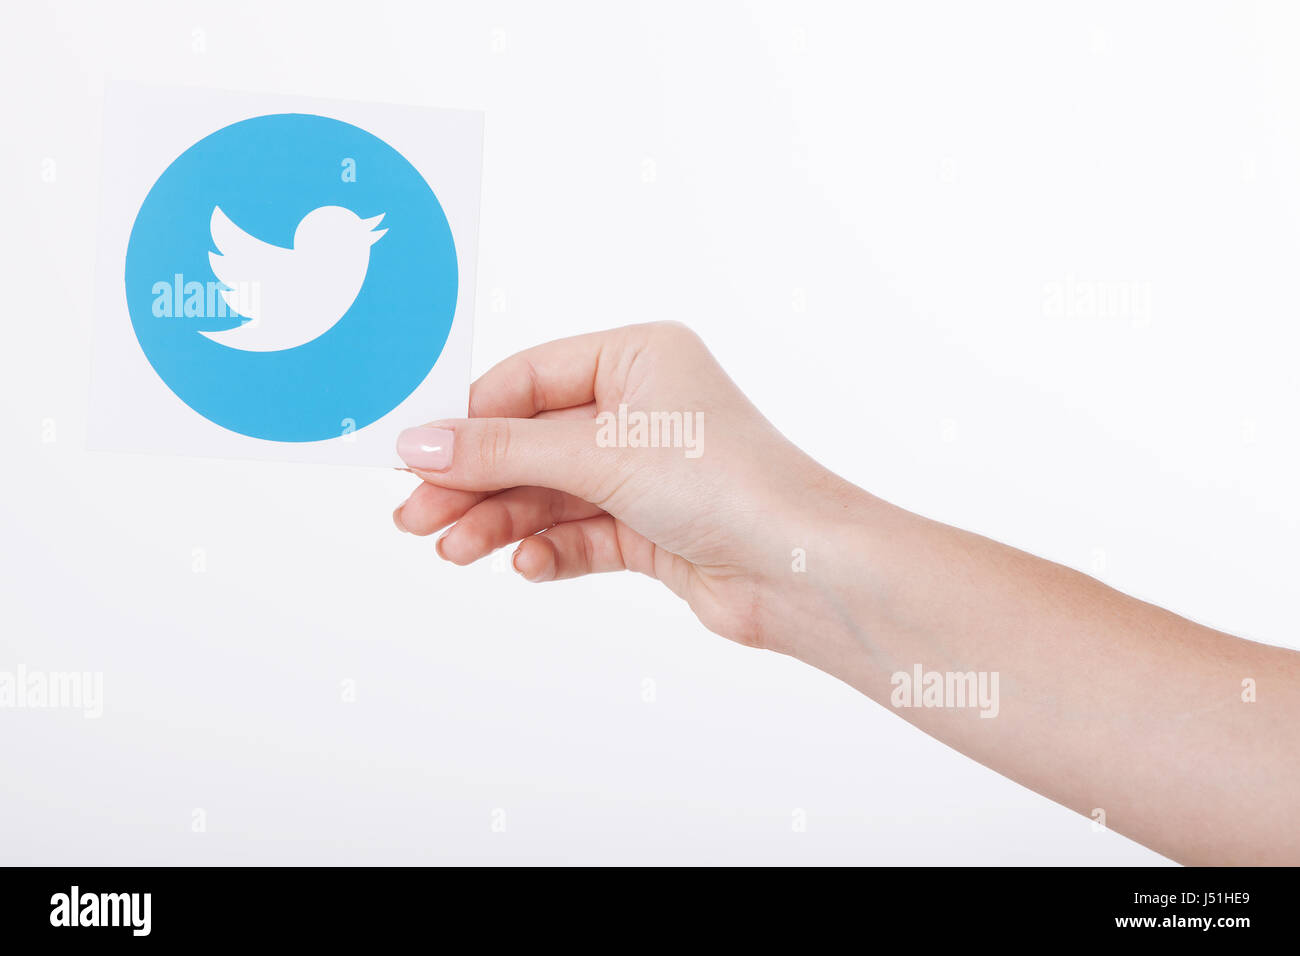 Kiew, UKRAINE - 22. August 2016: Frau Hände halten Twitter Logo Icoi Vogel bedrucktes Papier. Twitter ist ein social Networking-Onlinedienst, mit dem Benutzer senden und Lesen von SMS-Nachrichten. Stockfoto